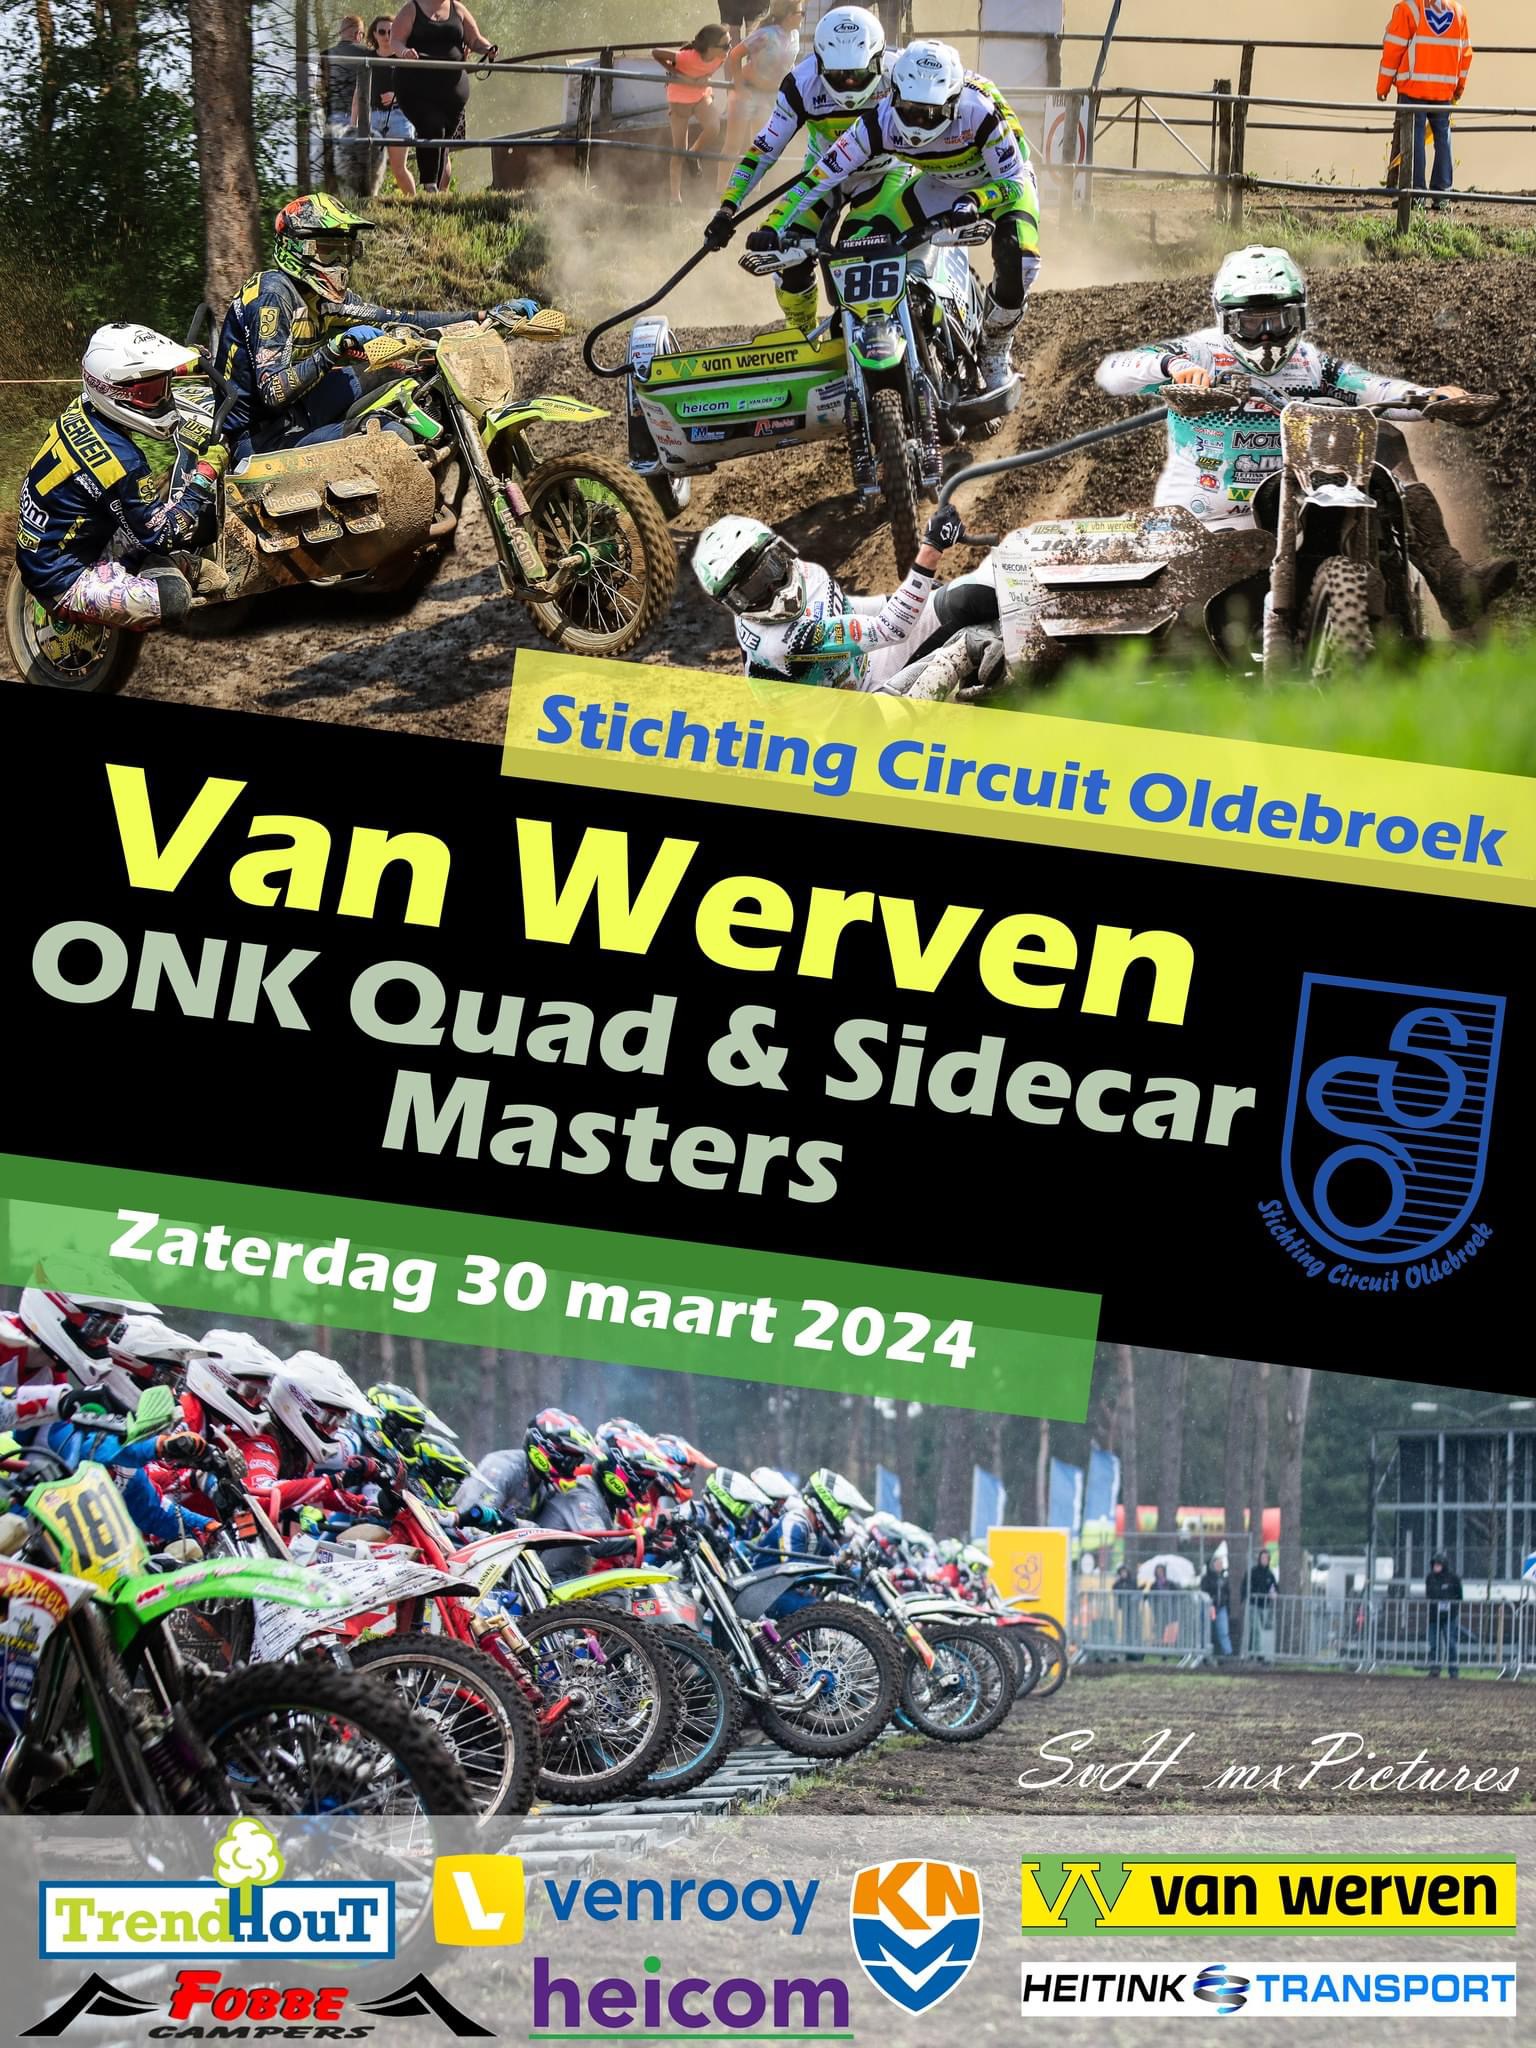 Onk Oldenbroek - March 30, 2024